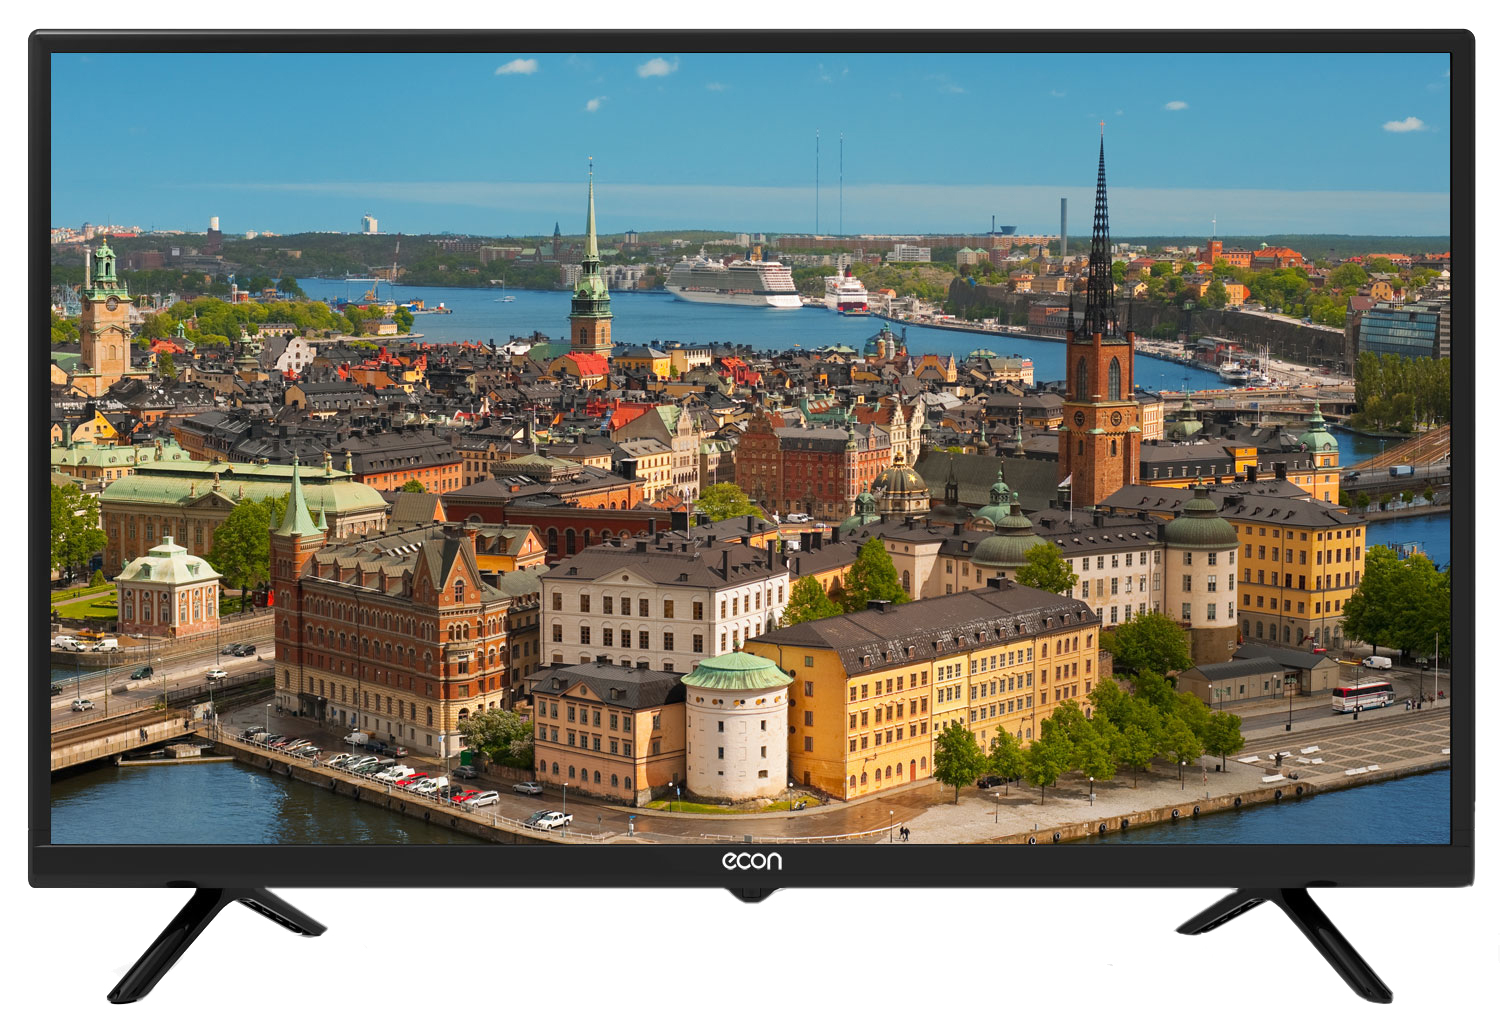 Картинка Телевизор ECON EX-32HT003B по разумной цене купить в интернет магазине mall.su